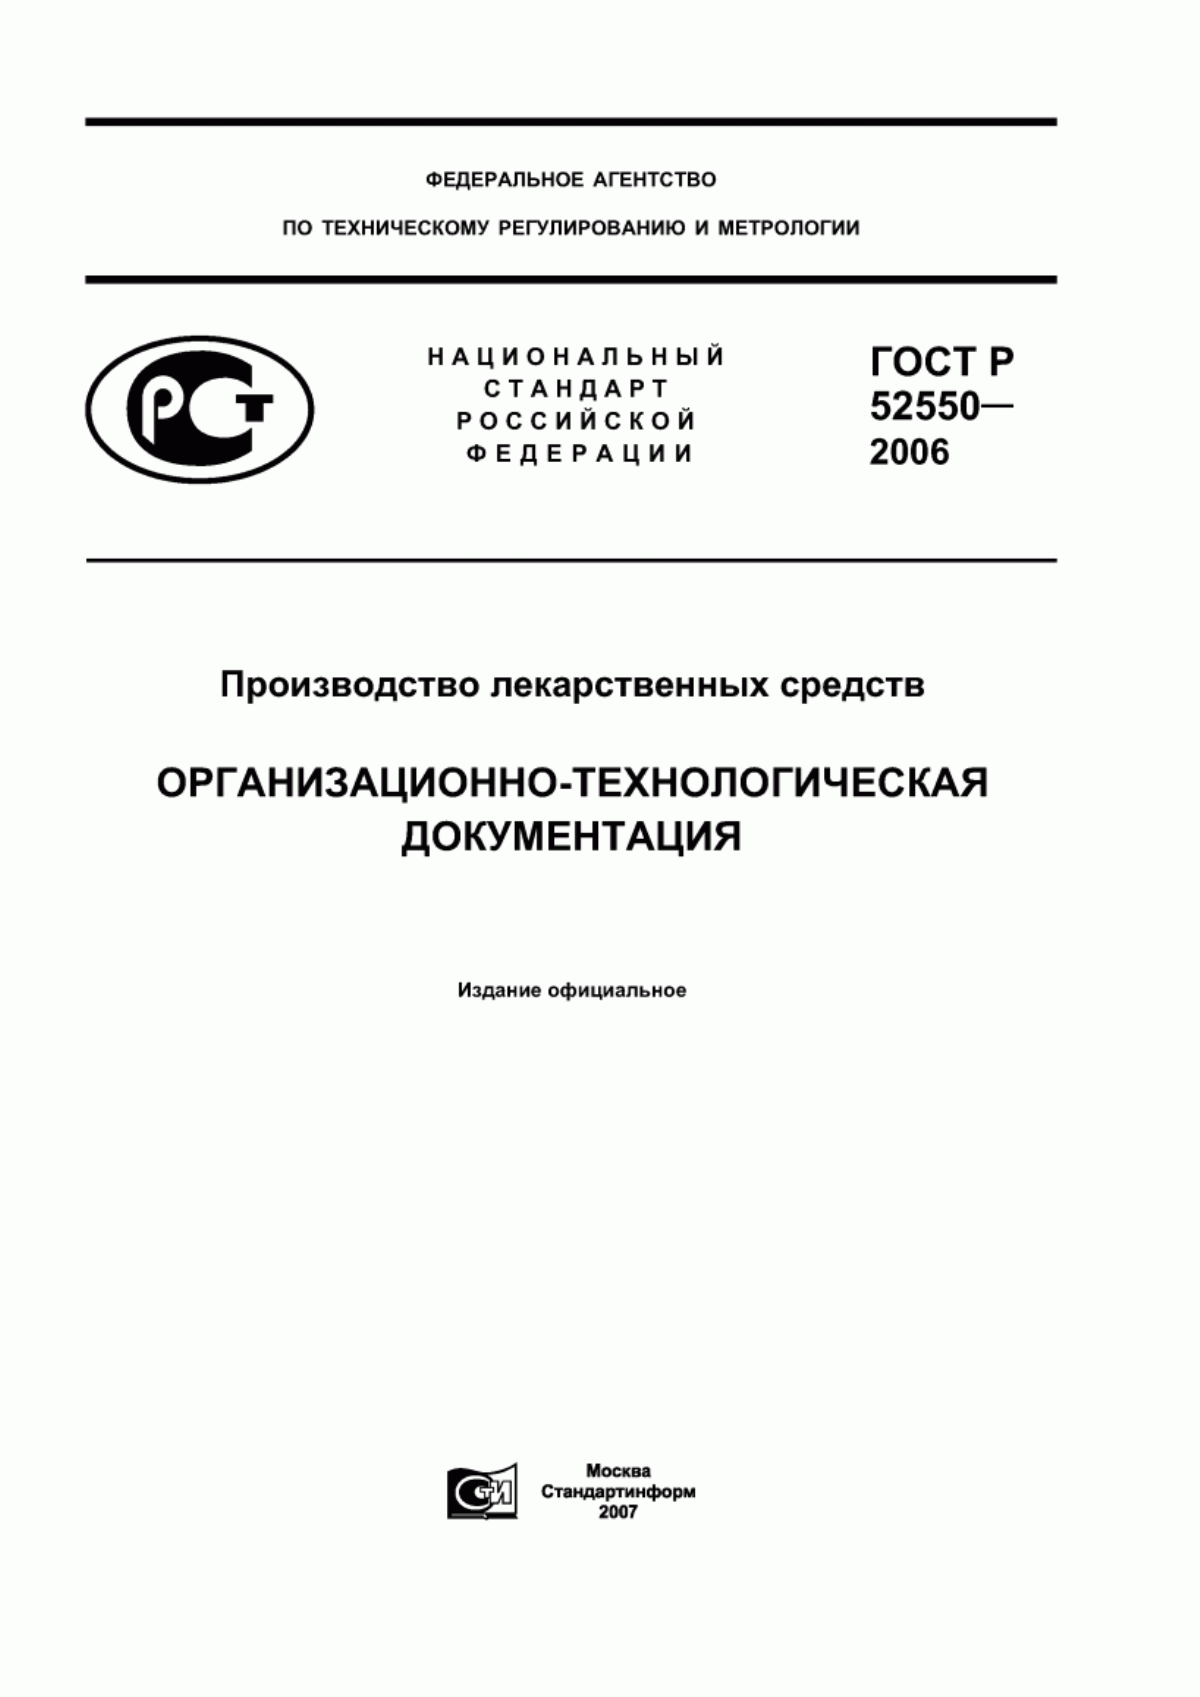 ГОСТ Р 52550-2006 Производство лекарственных средств. Организационно-технологическая документация